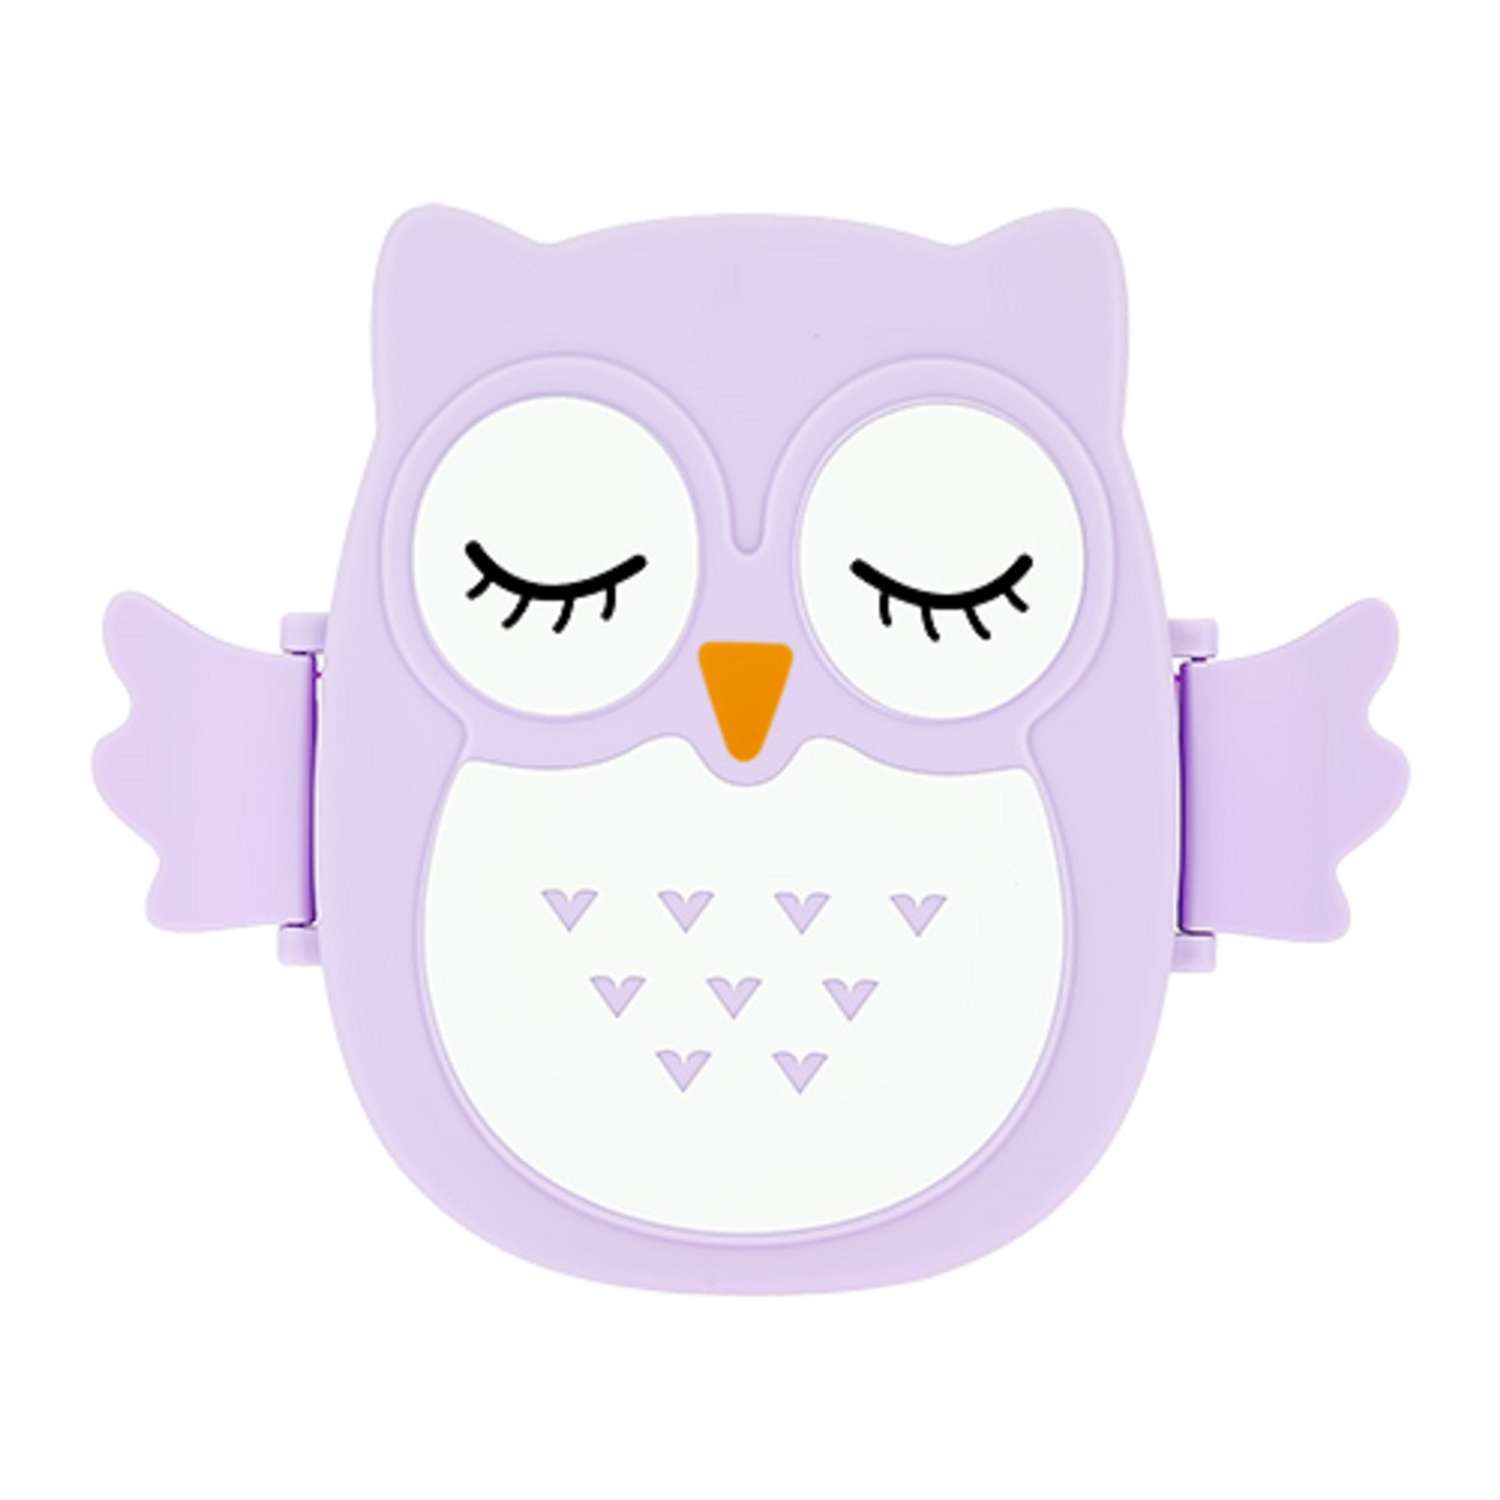 Ланч-бокс FUN Owl violet 16 см - фото 1